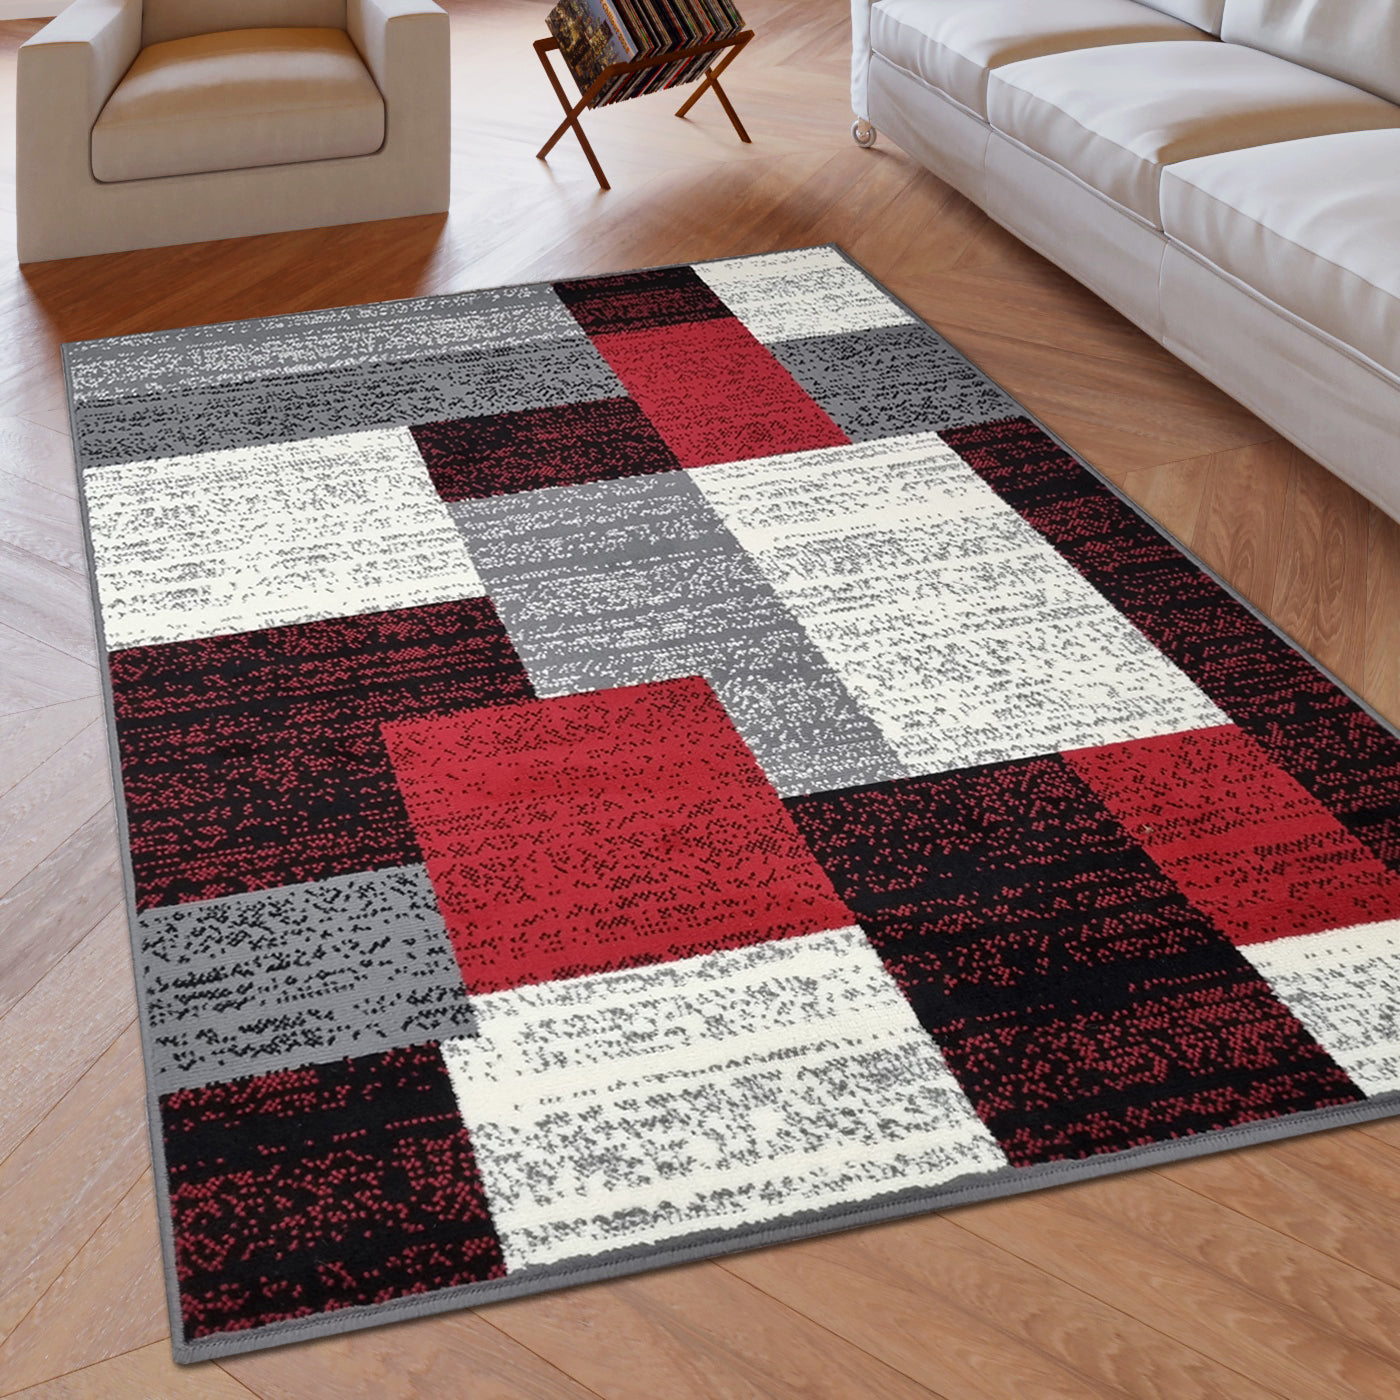 Modern Rug Geometric Red Grey Black Patterned Soft Carpet Rug